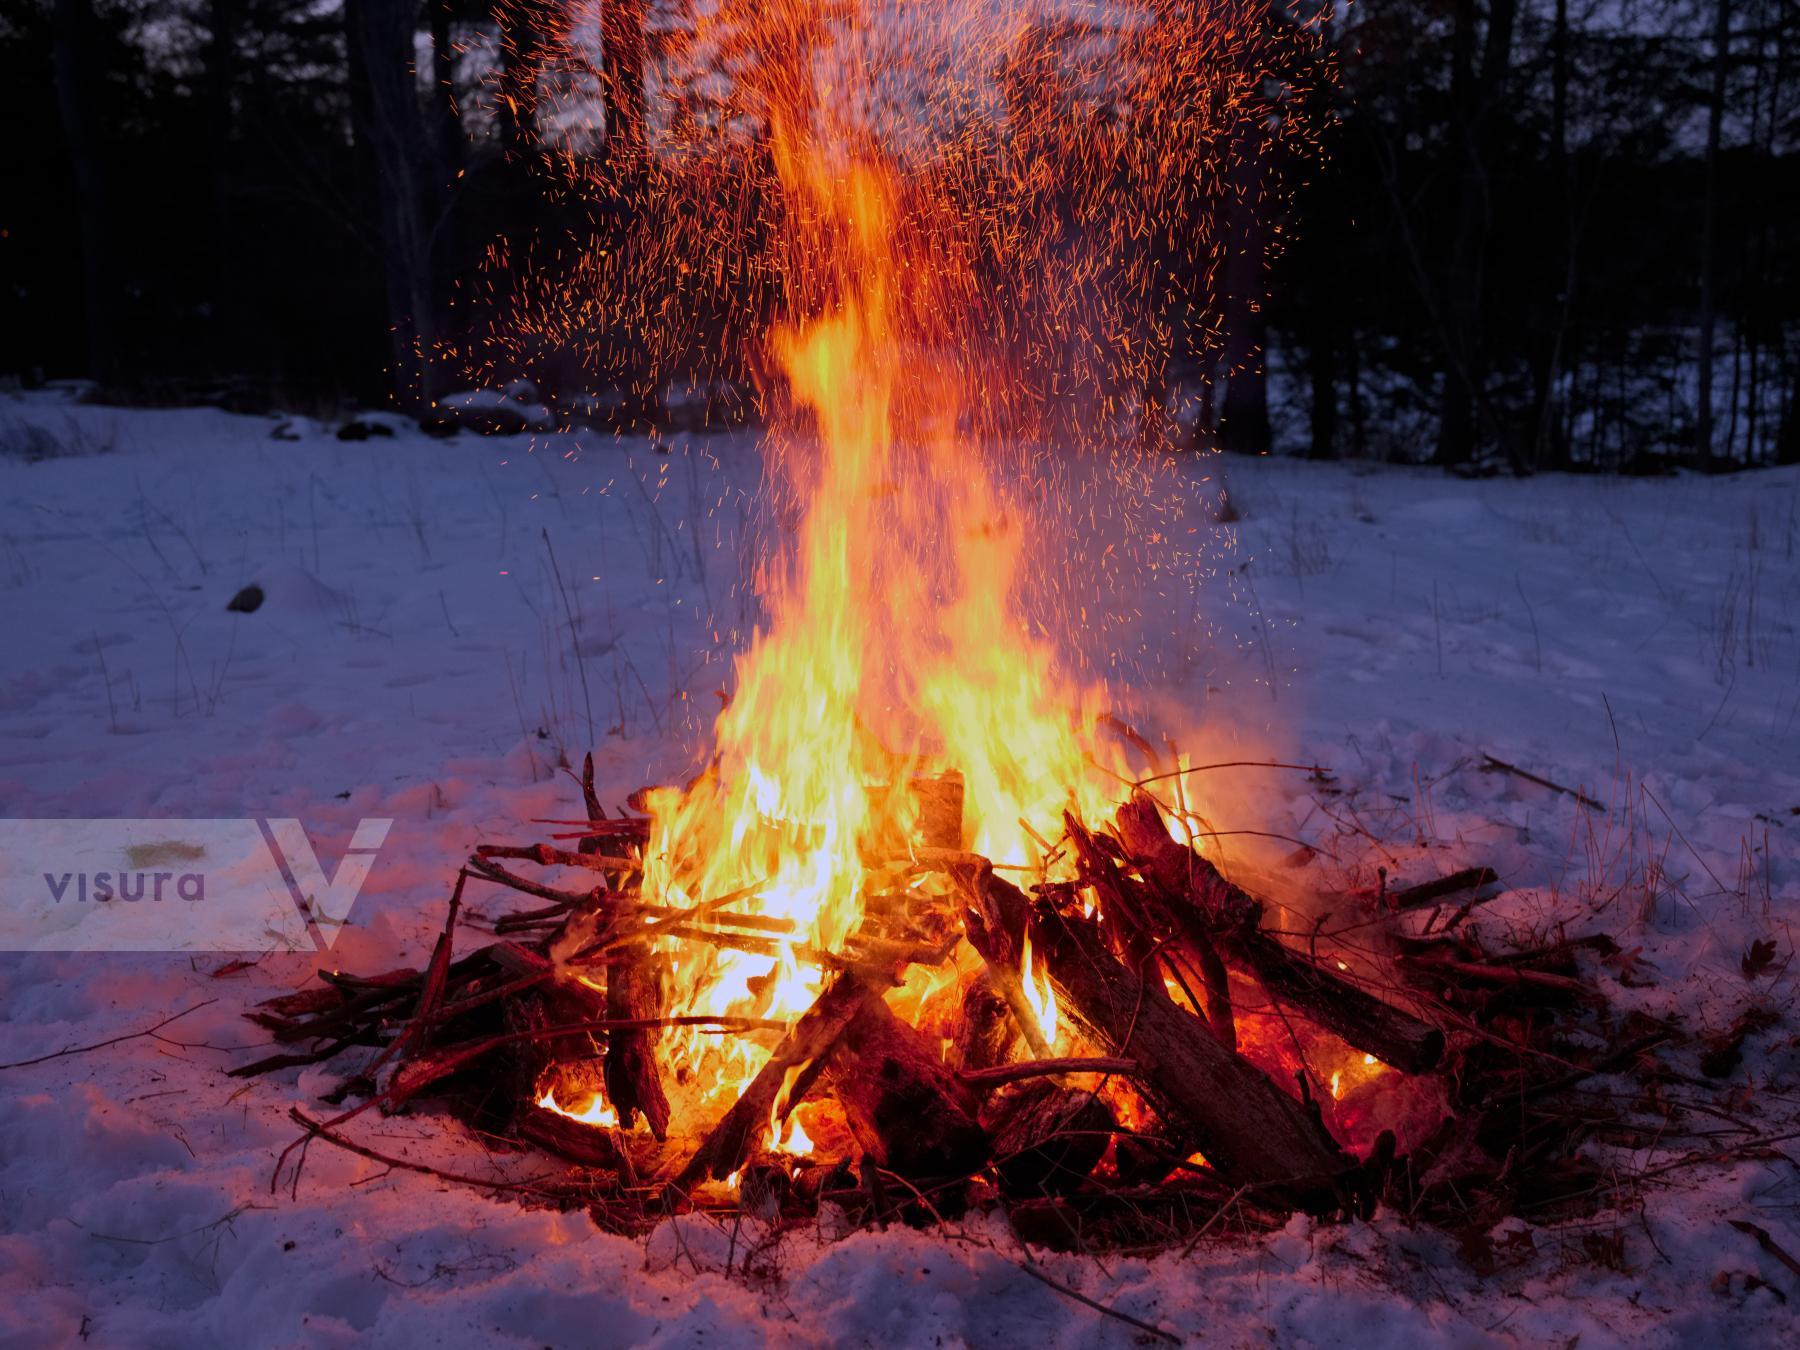 Purchase Winter Fire by Ellen Kok